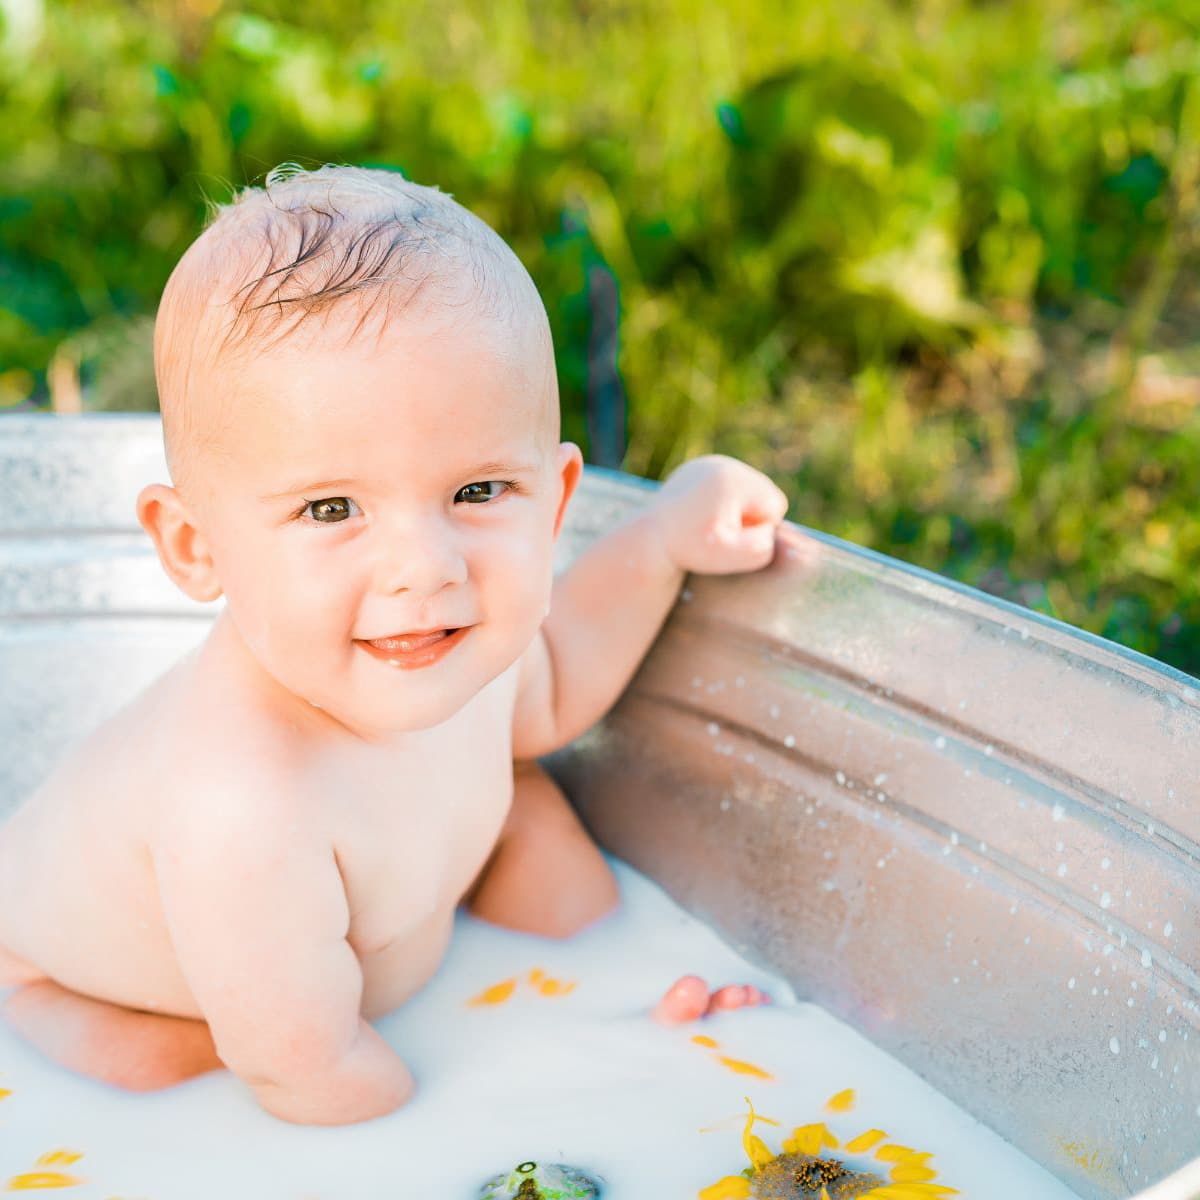 boy in bath tub with milk bath.